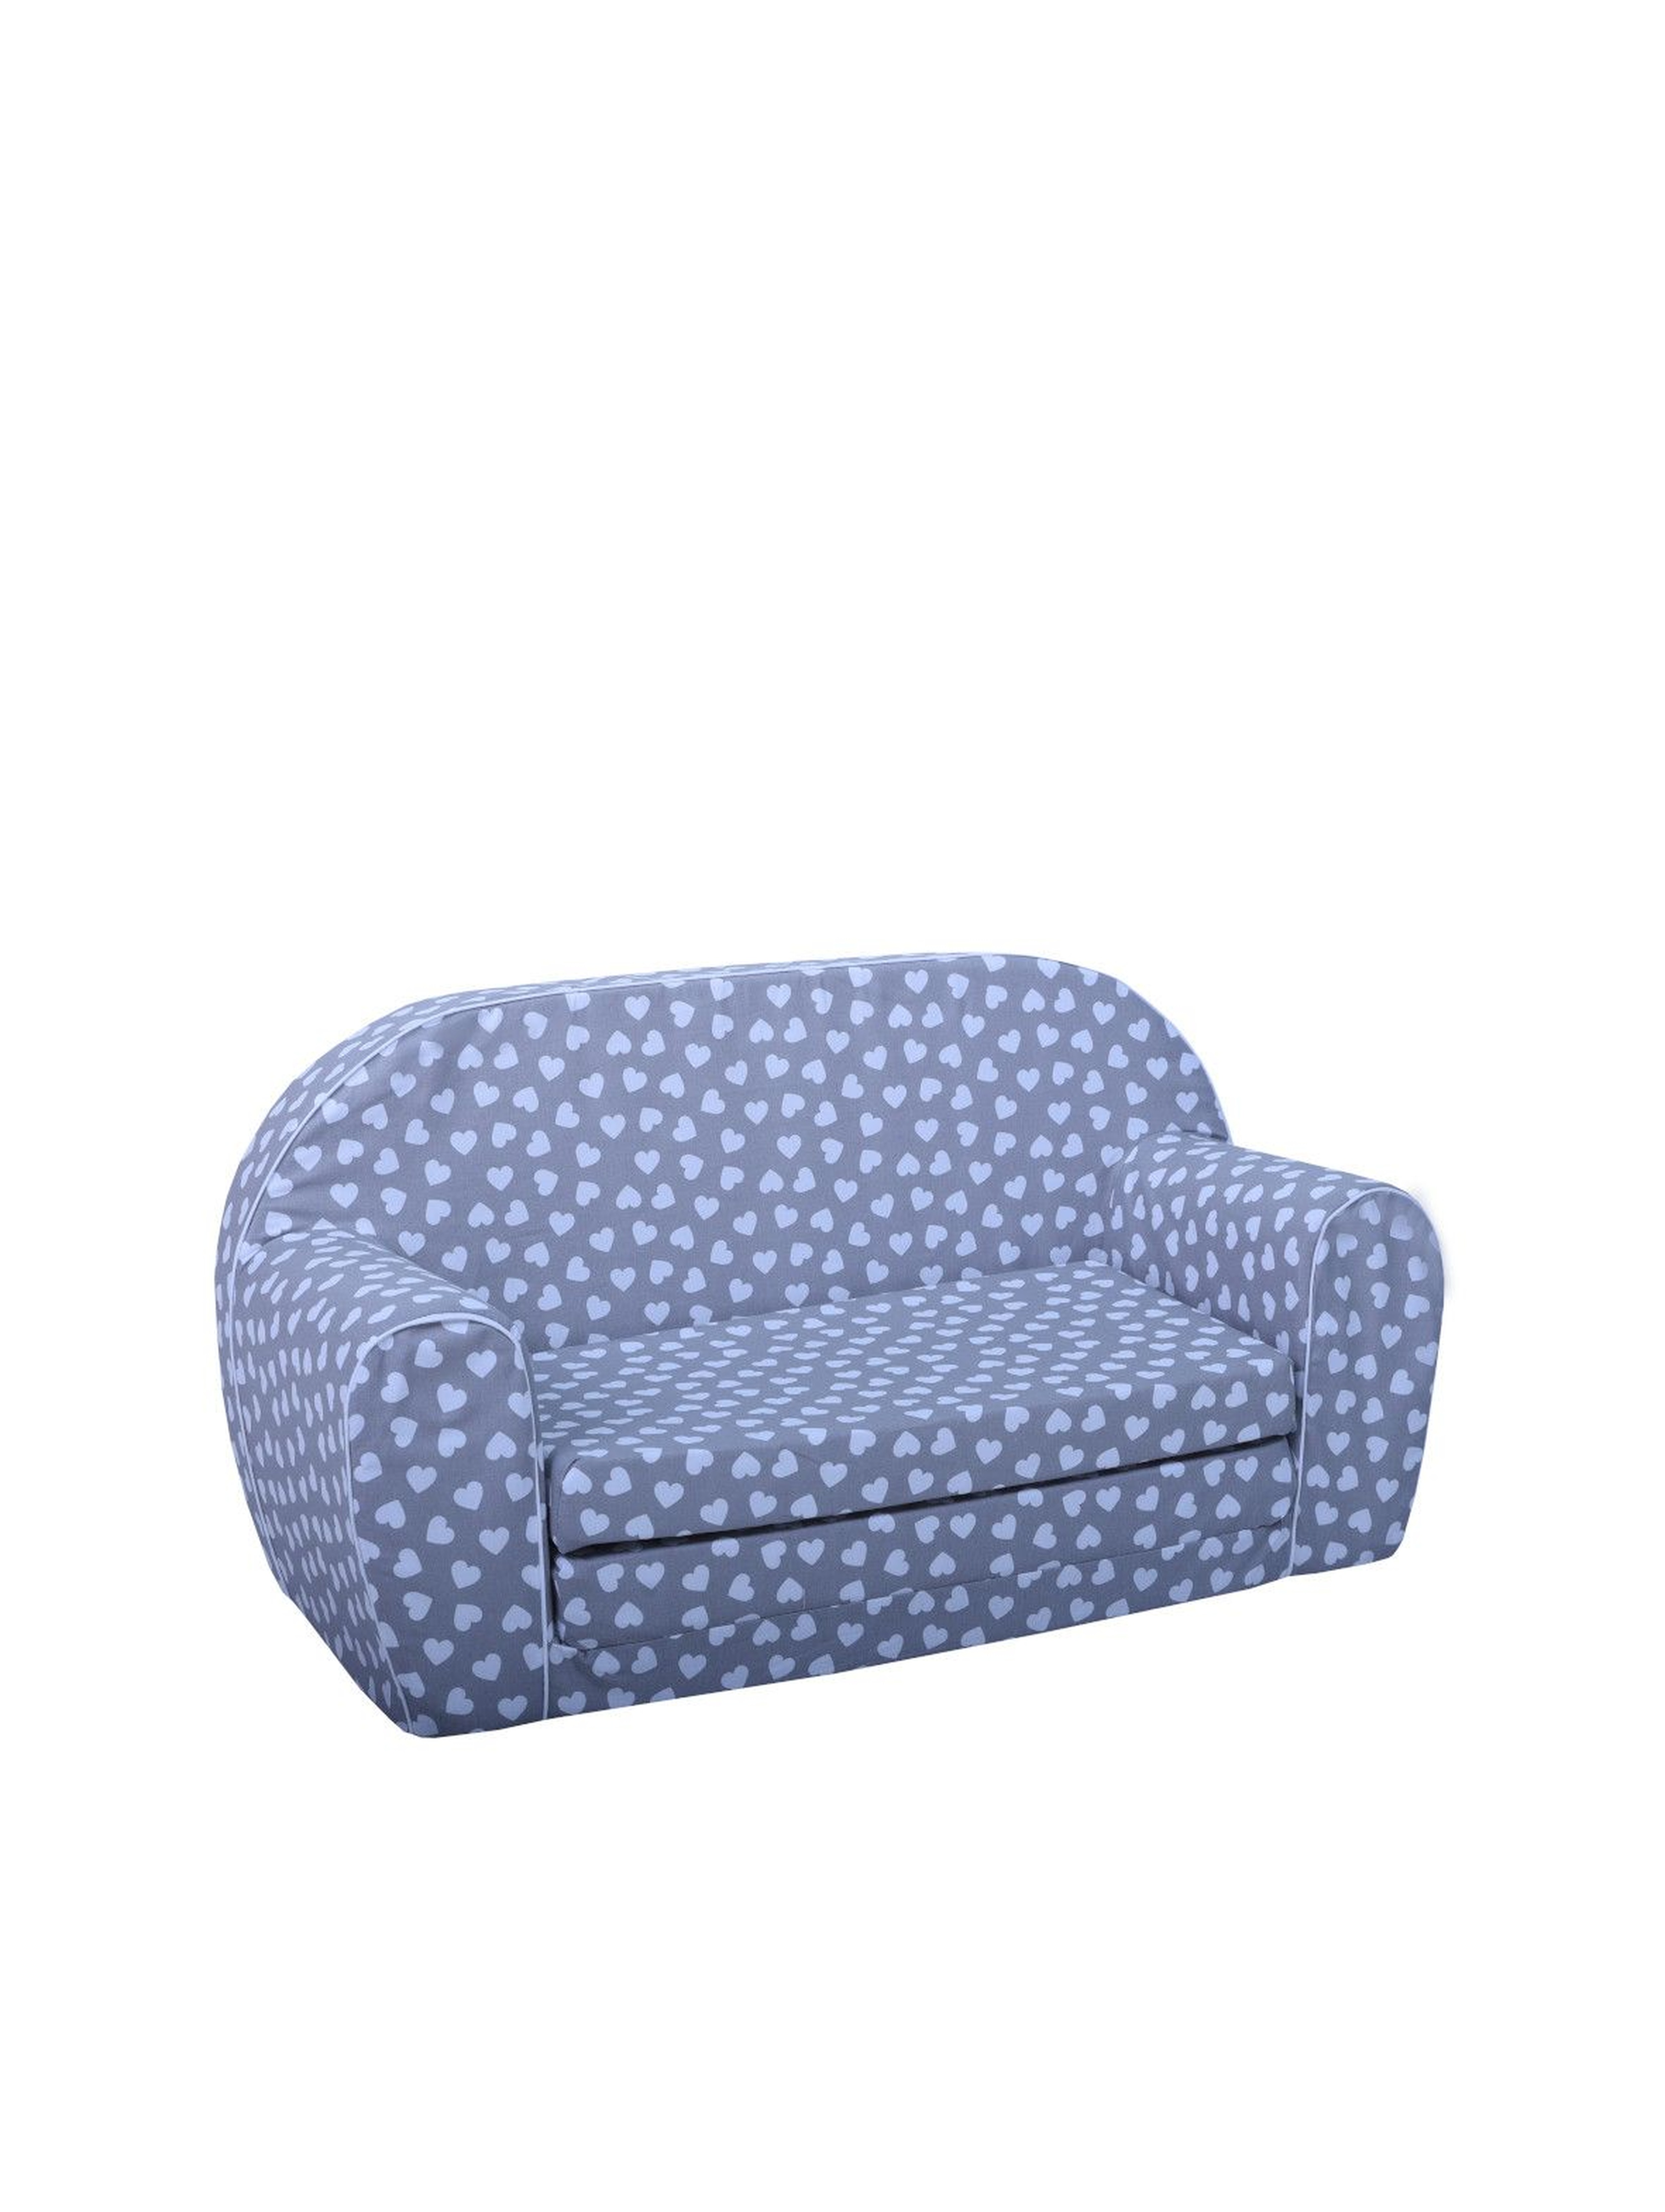 Niebieska sofa w serduszka